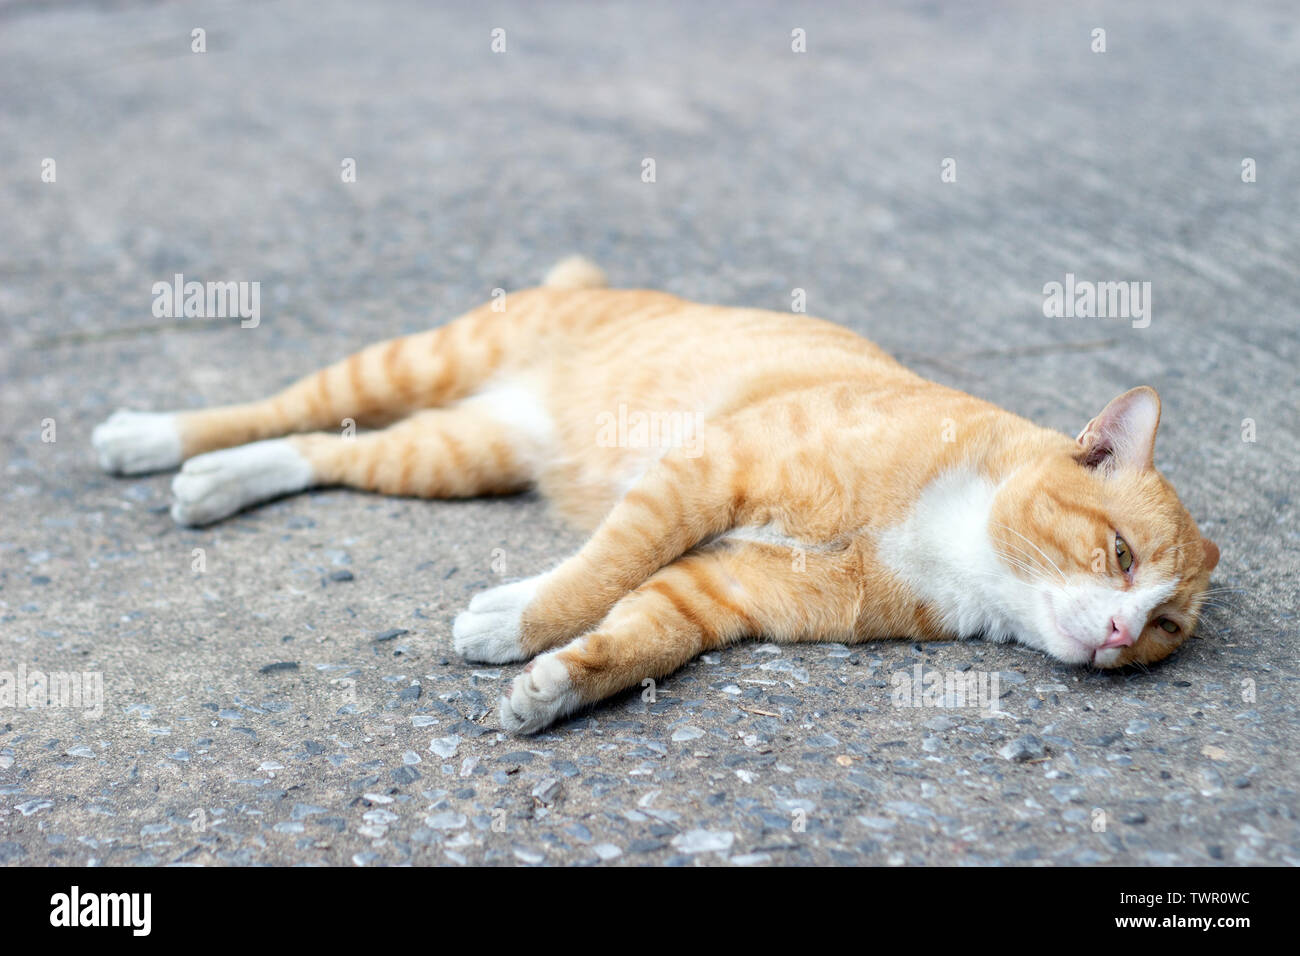 Adorable yeux de chat paresseux regarder sur rue. Concept photo animal Banque D'Images